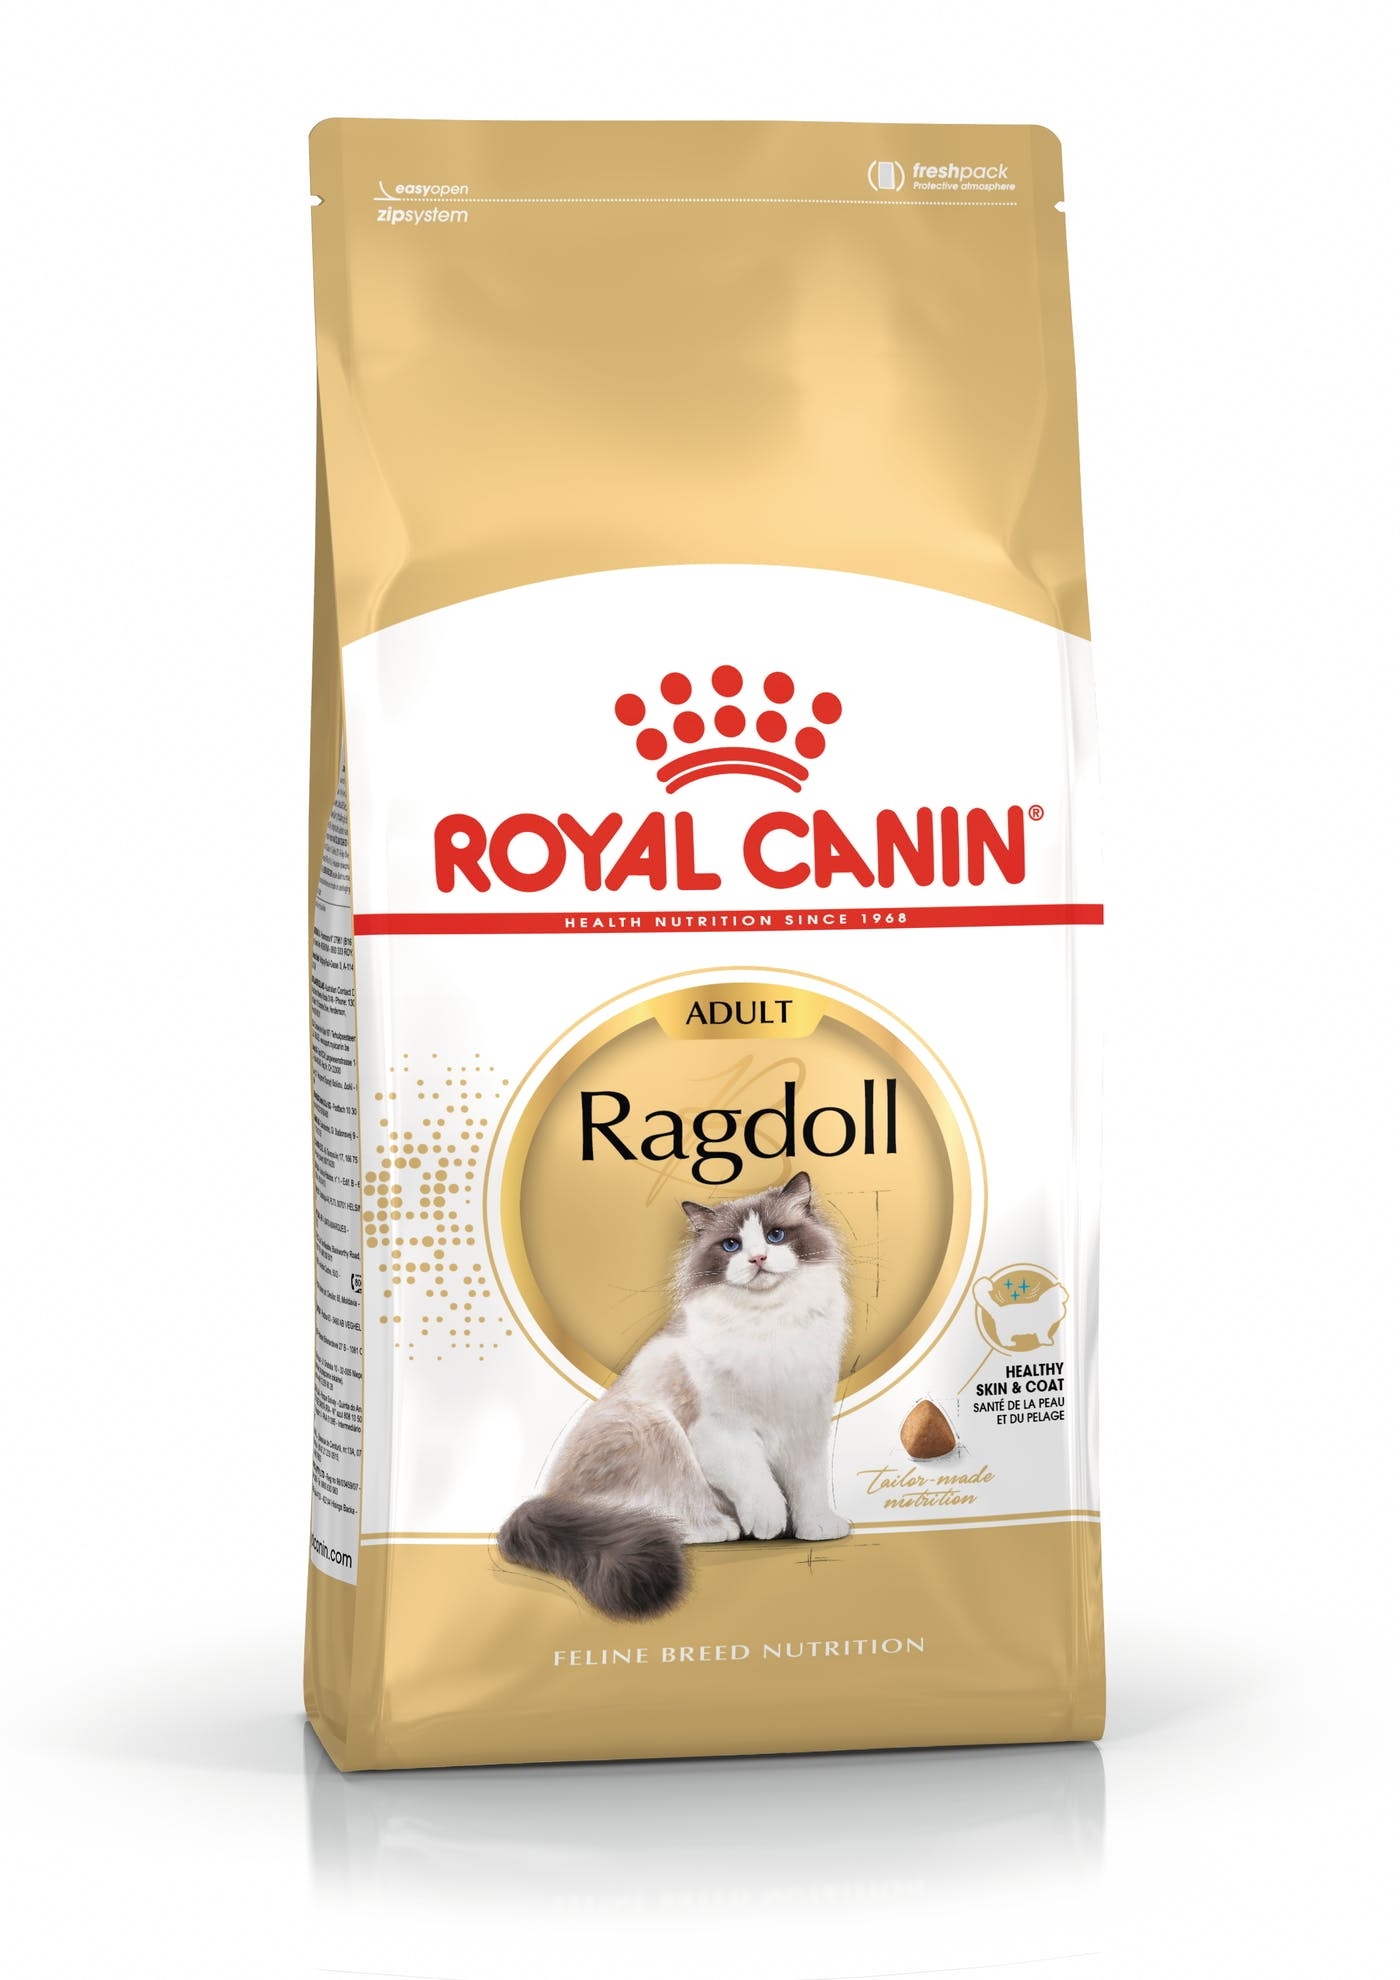 Billede af Royal Canin Ragdoll Adult. Til den voksne kat over 12 måneder